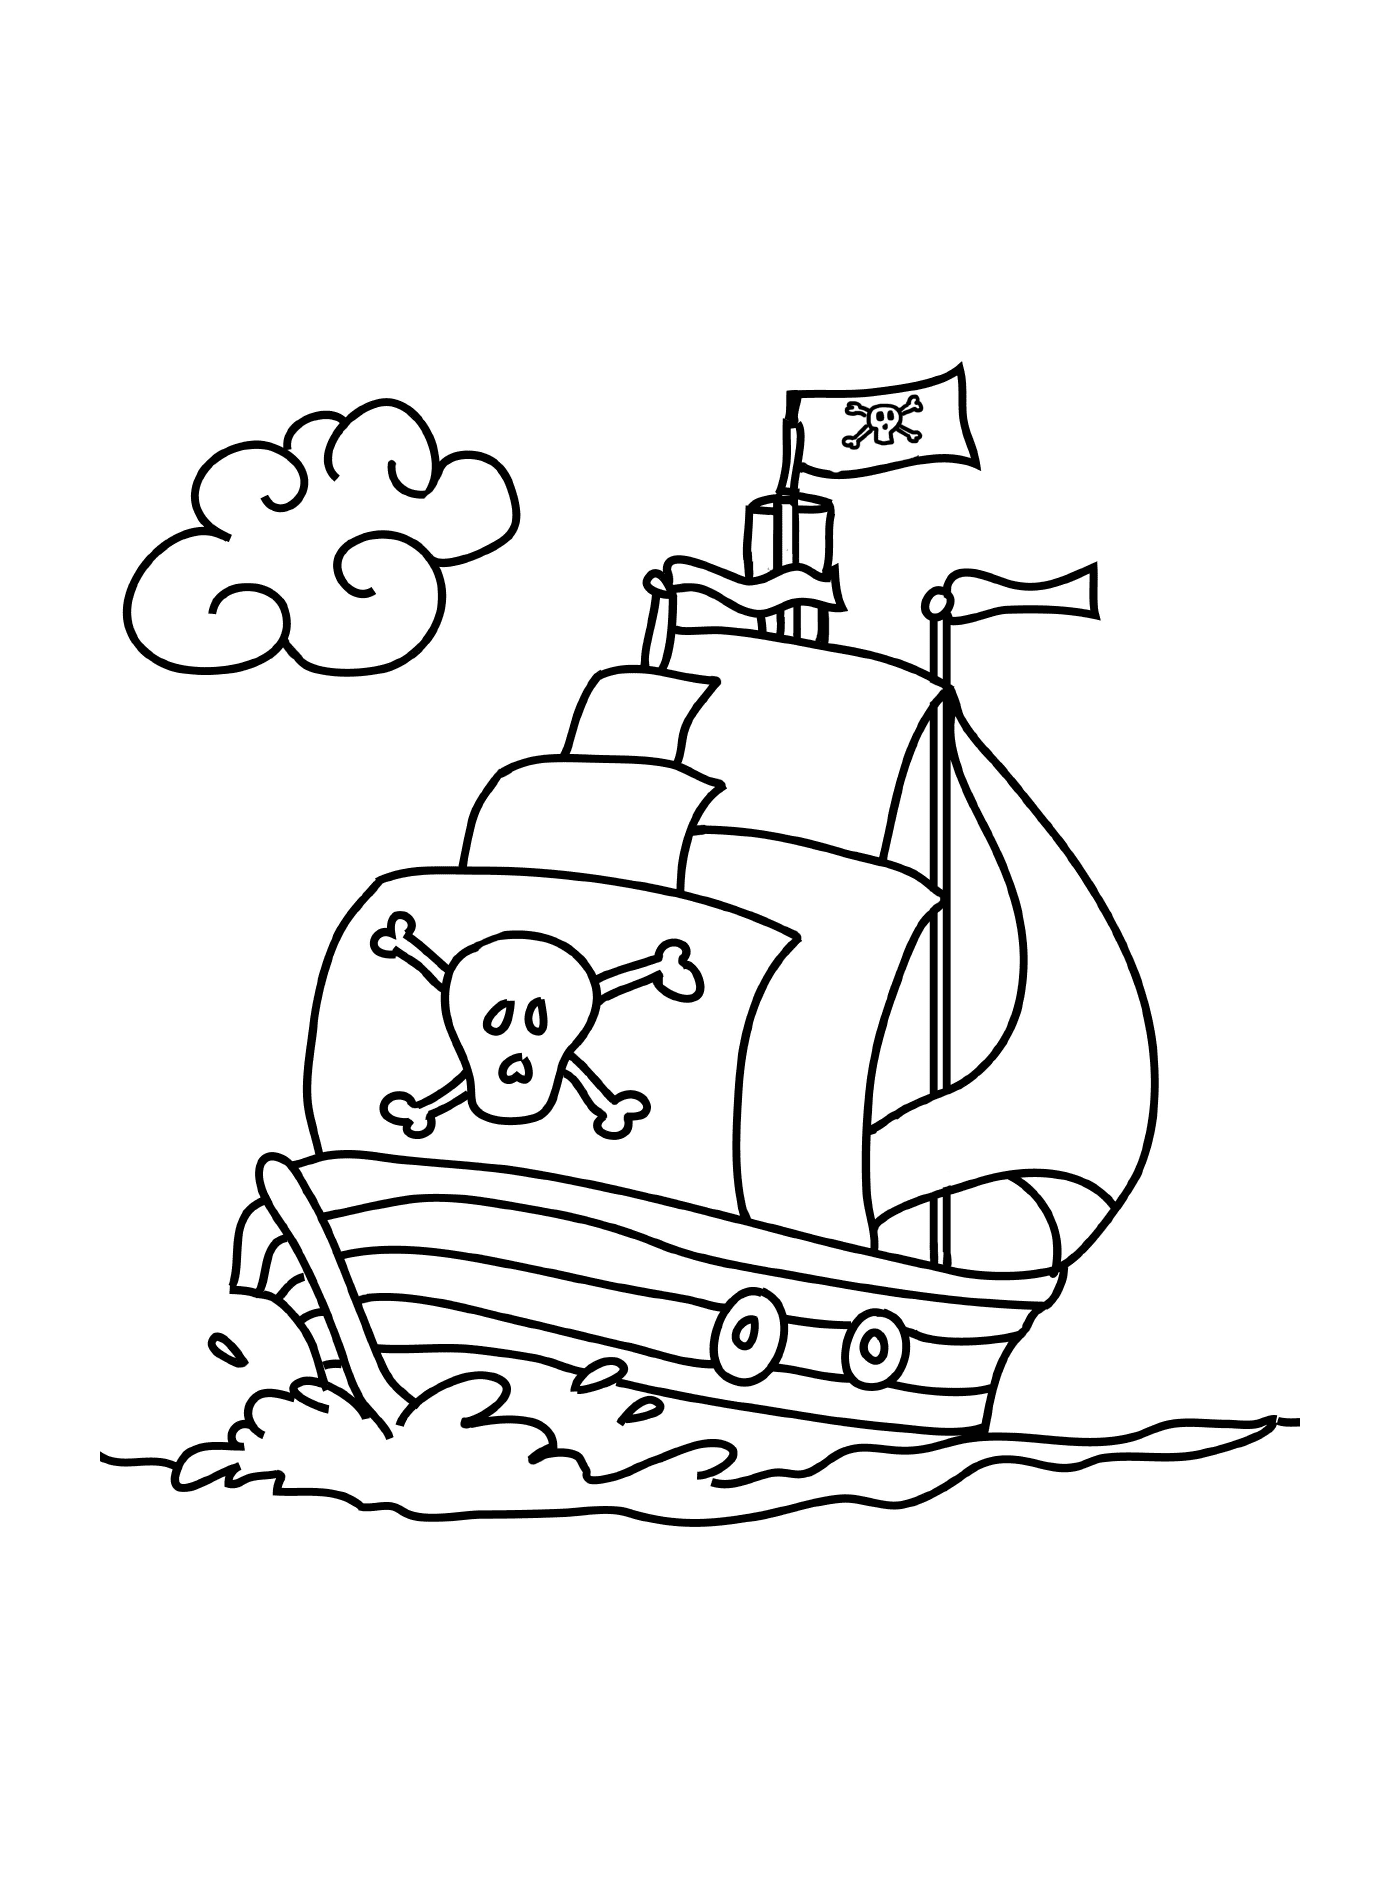  Легкое пиратское судно, материнское 